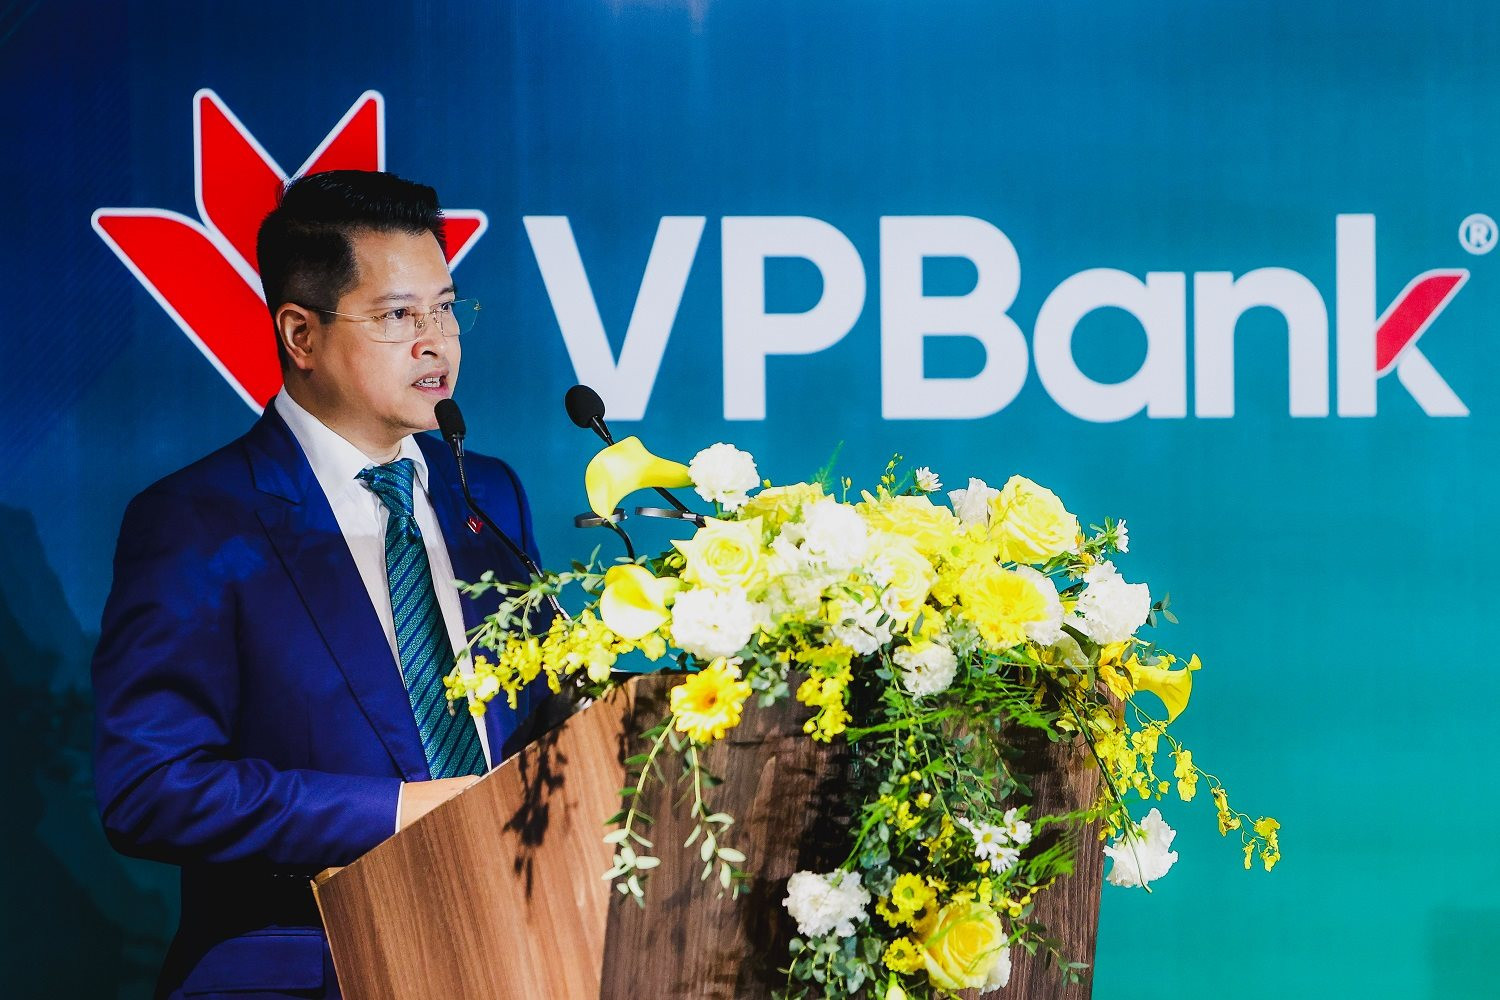 VPBank hoàn tất phát hành cổ phiếu riêng lẻ cho nhà đầu tư Nhật Bản SMBC - Ảnh 1.